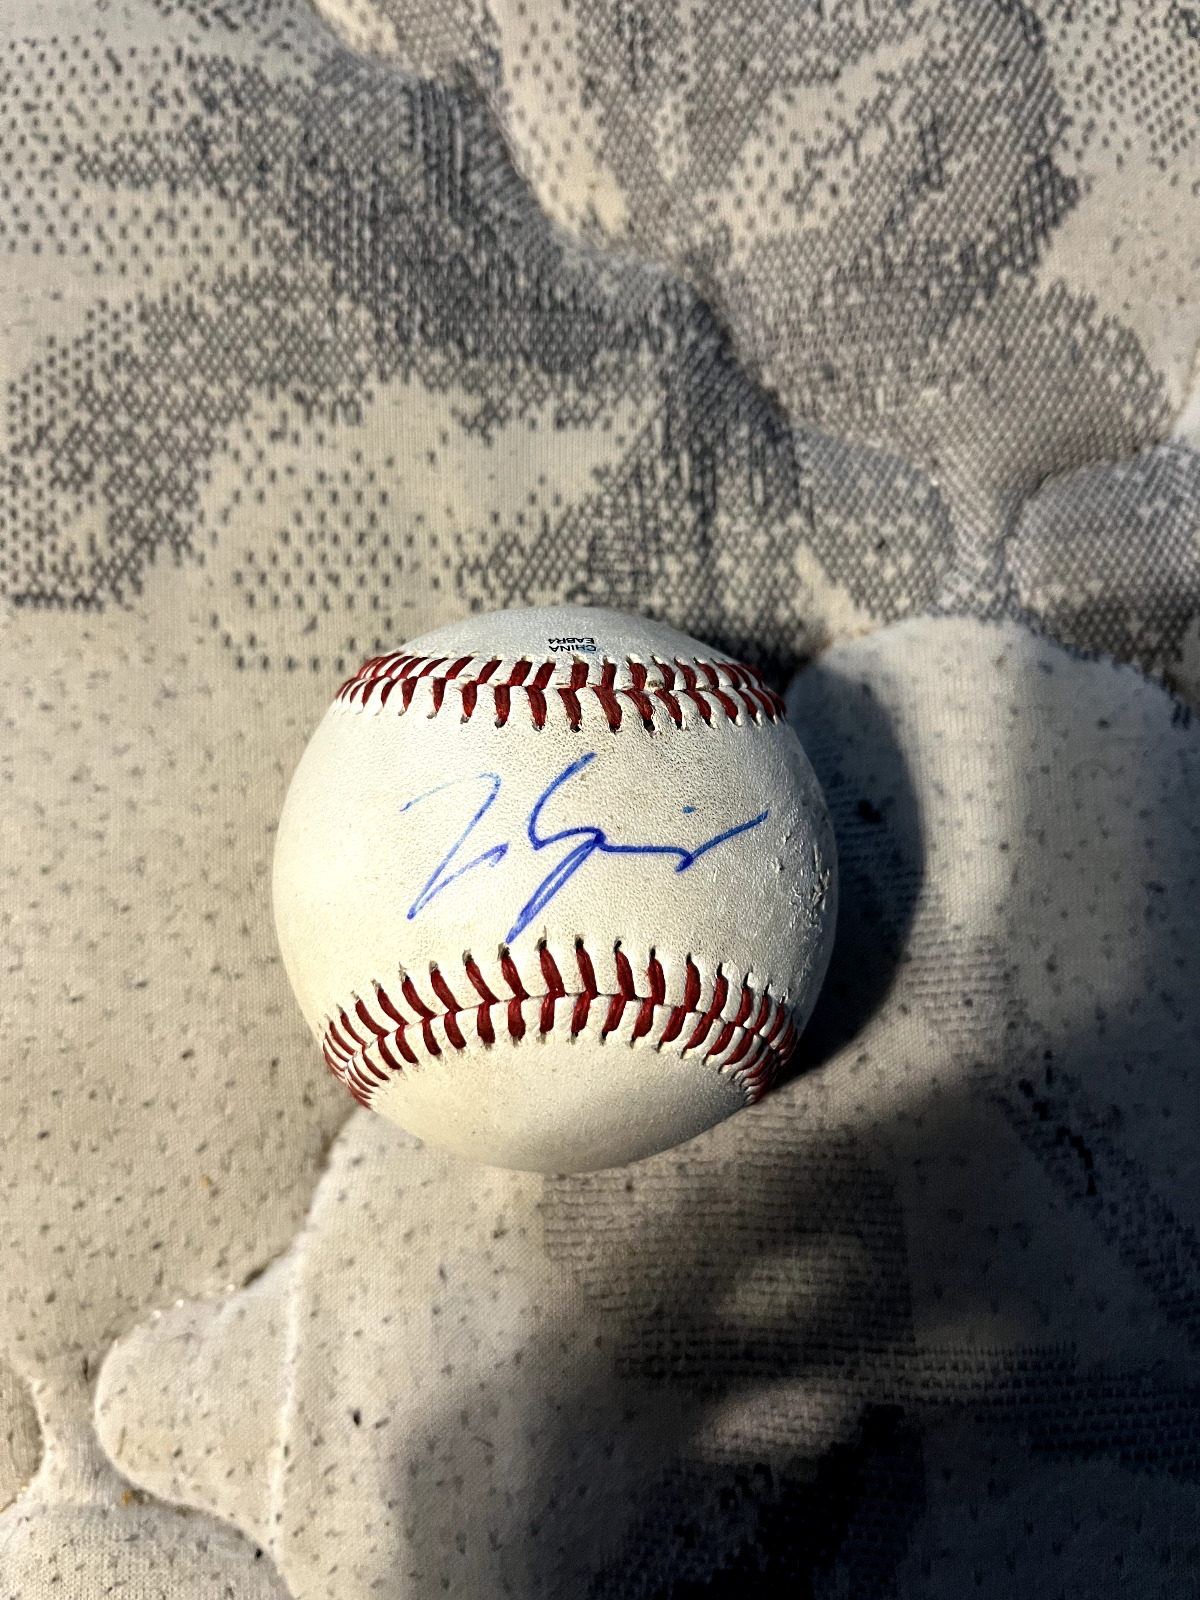 Detriot Tigers Matt Manning autograph baseball